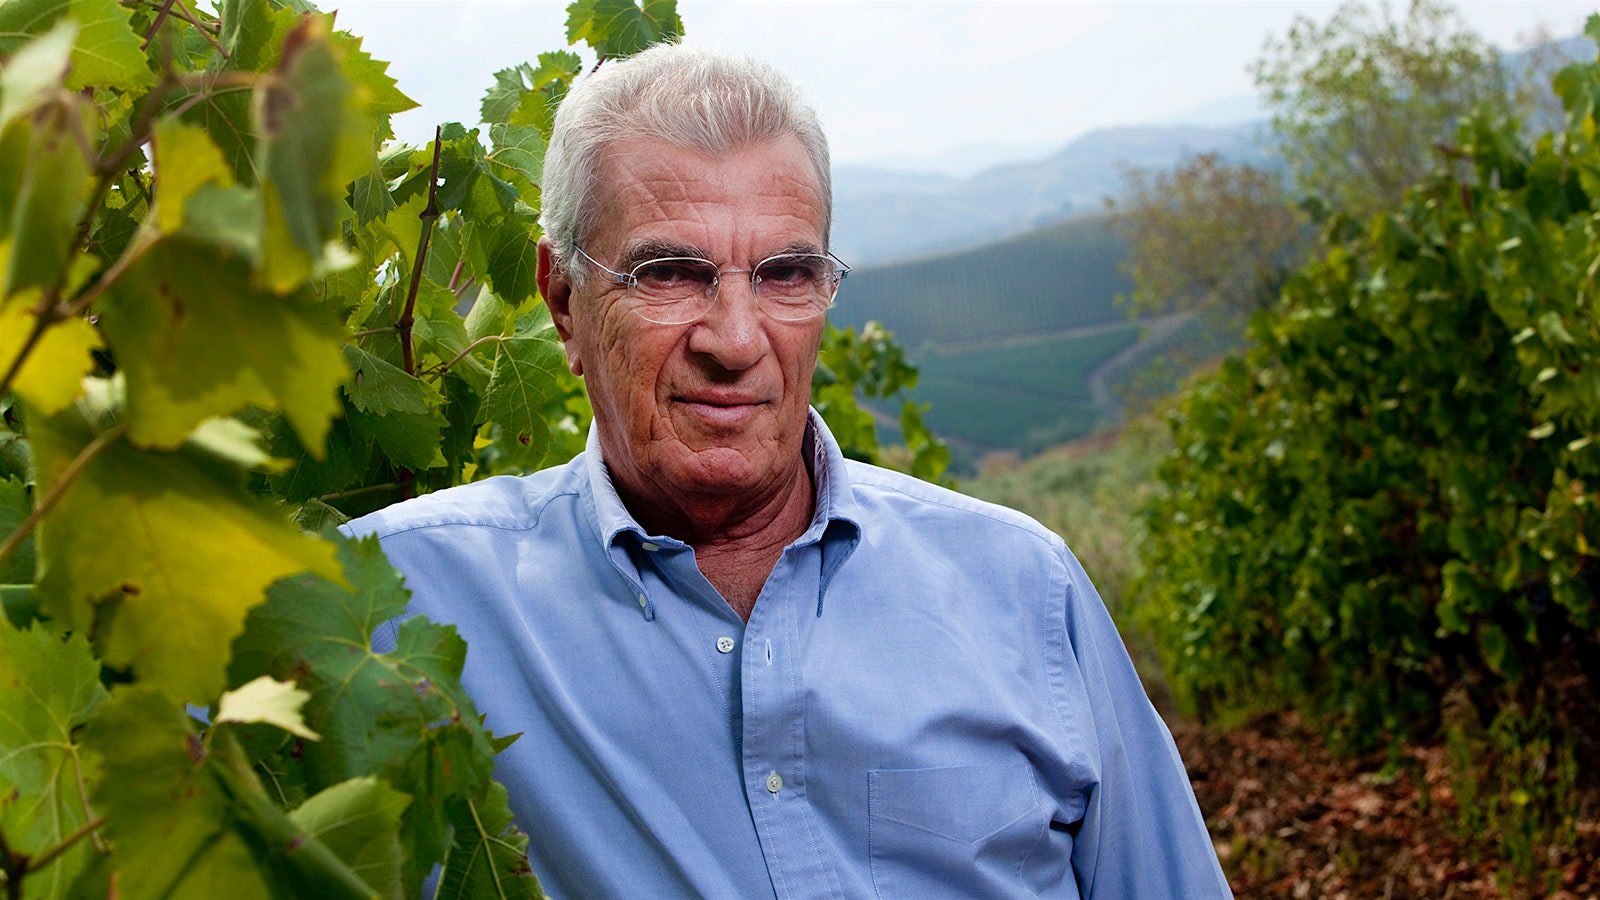  Lucio Tasca d'Almerita trabajó en la bodega de su familia durante seis décadas, expandiendo no solo las ventas sino también la percepción mundial del vino siciliano.